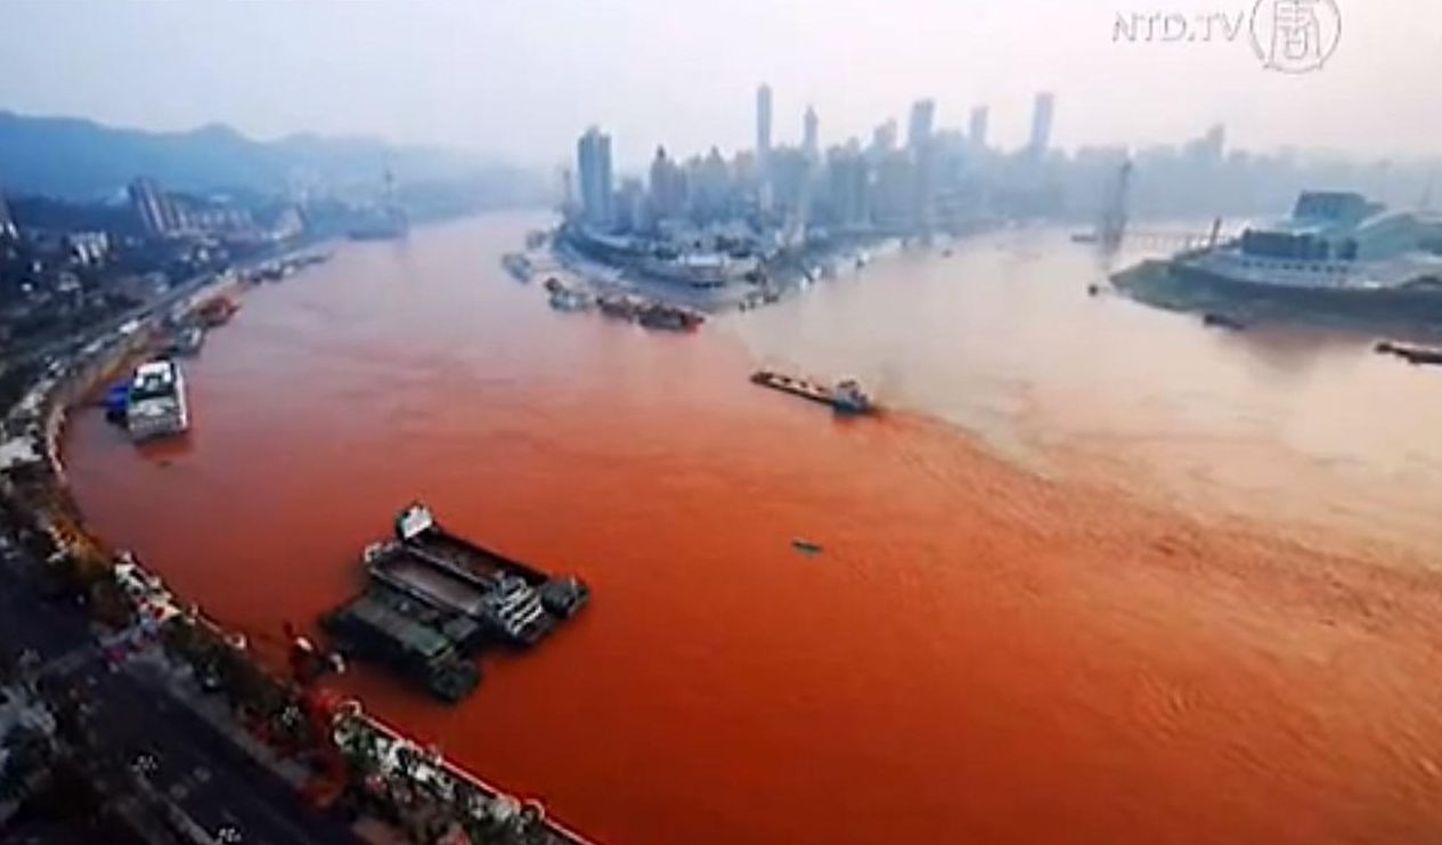 Jangtse jõgi muutus punaseks